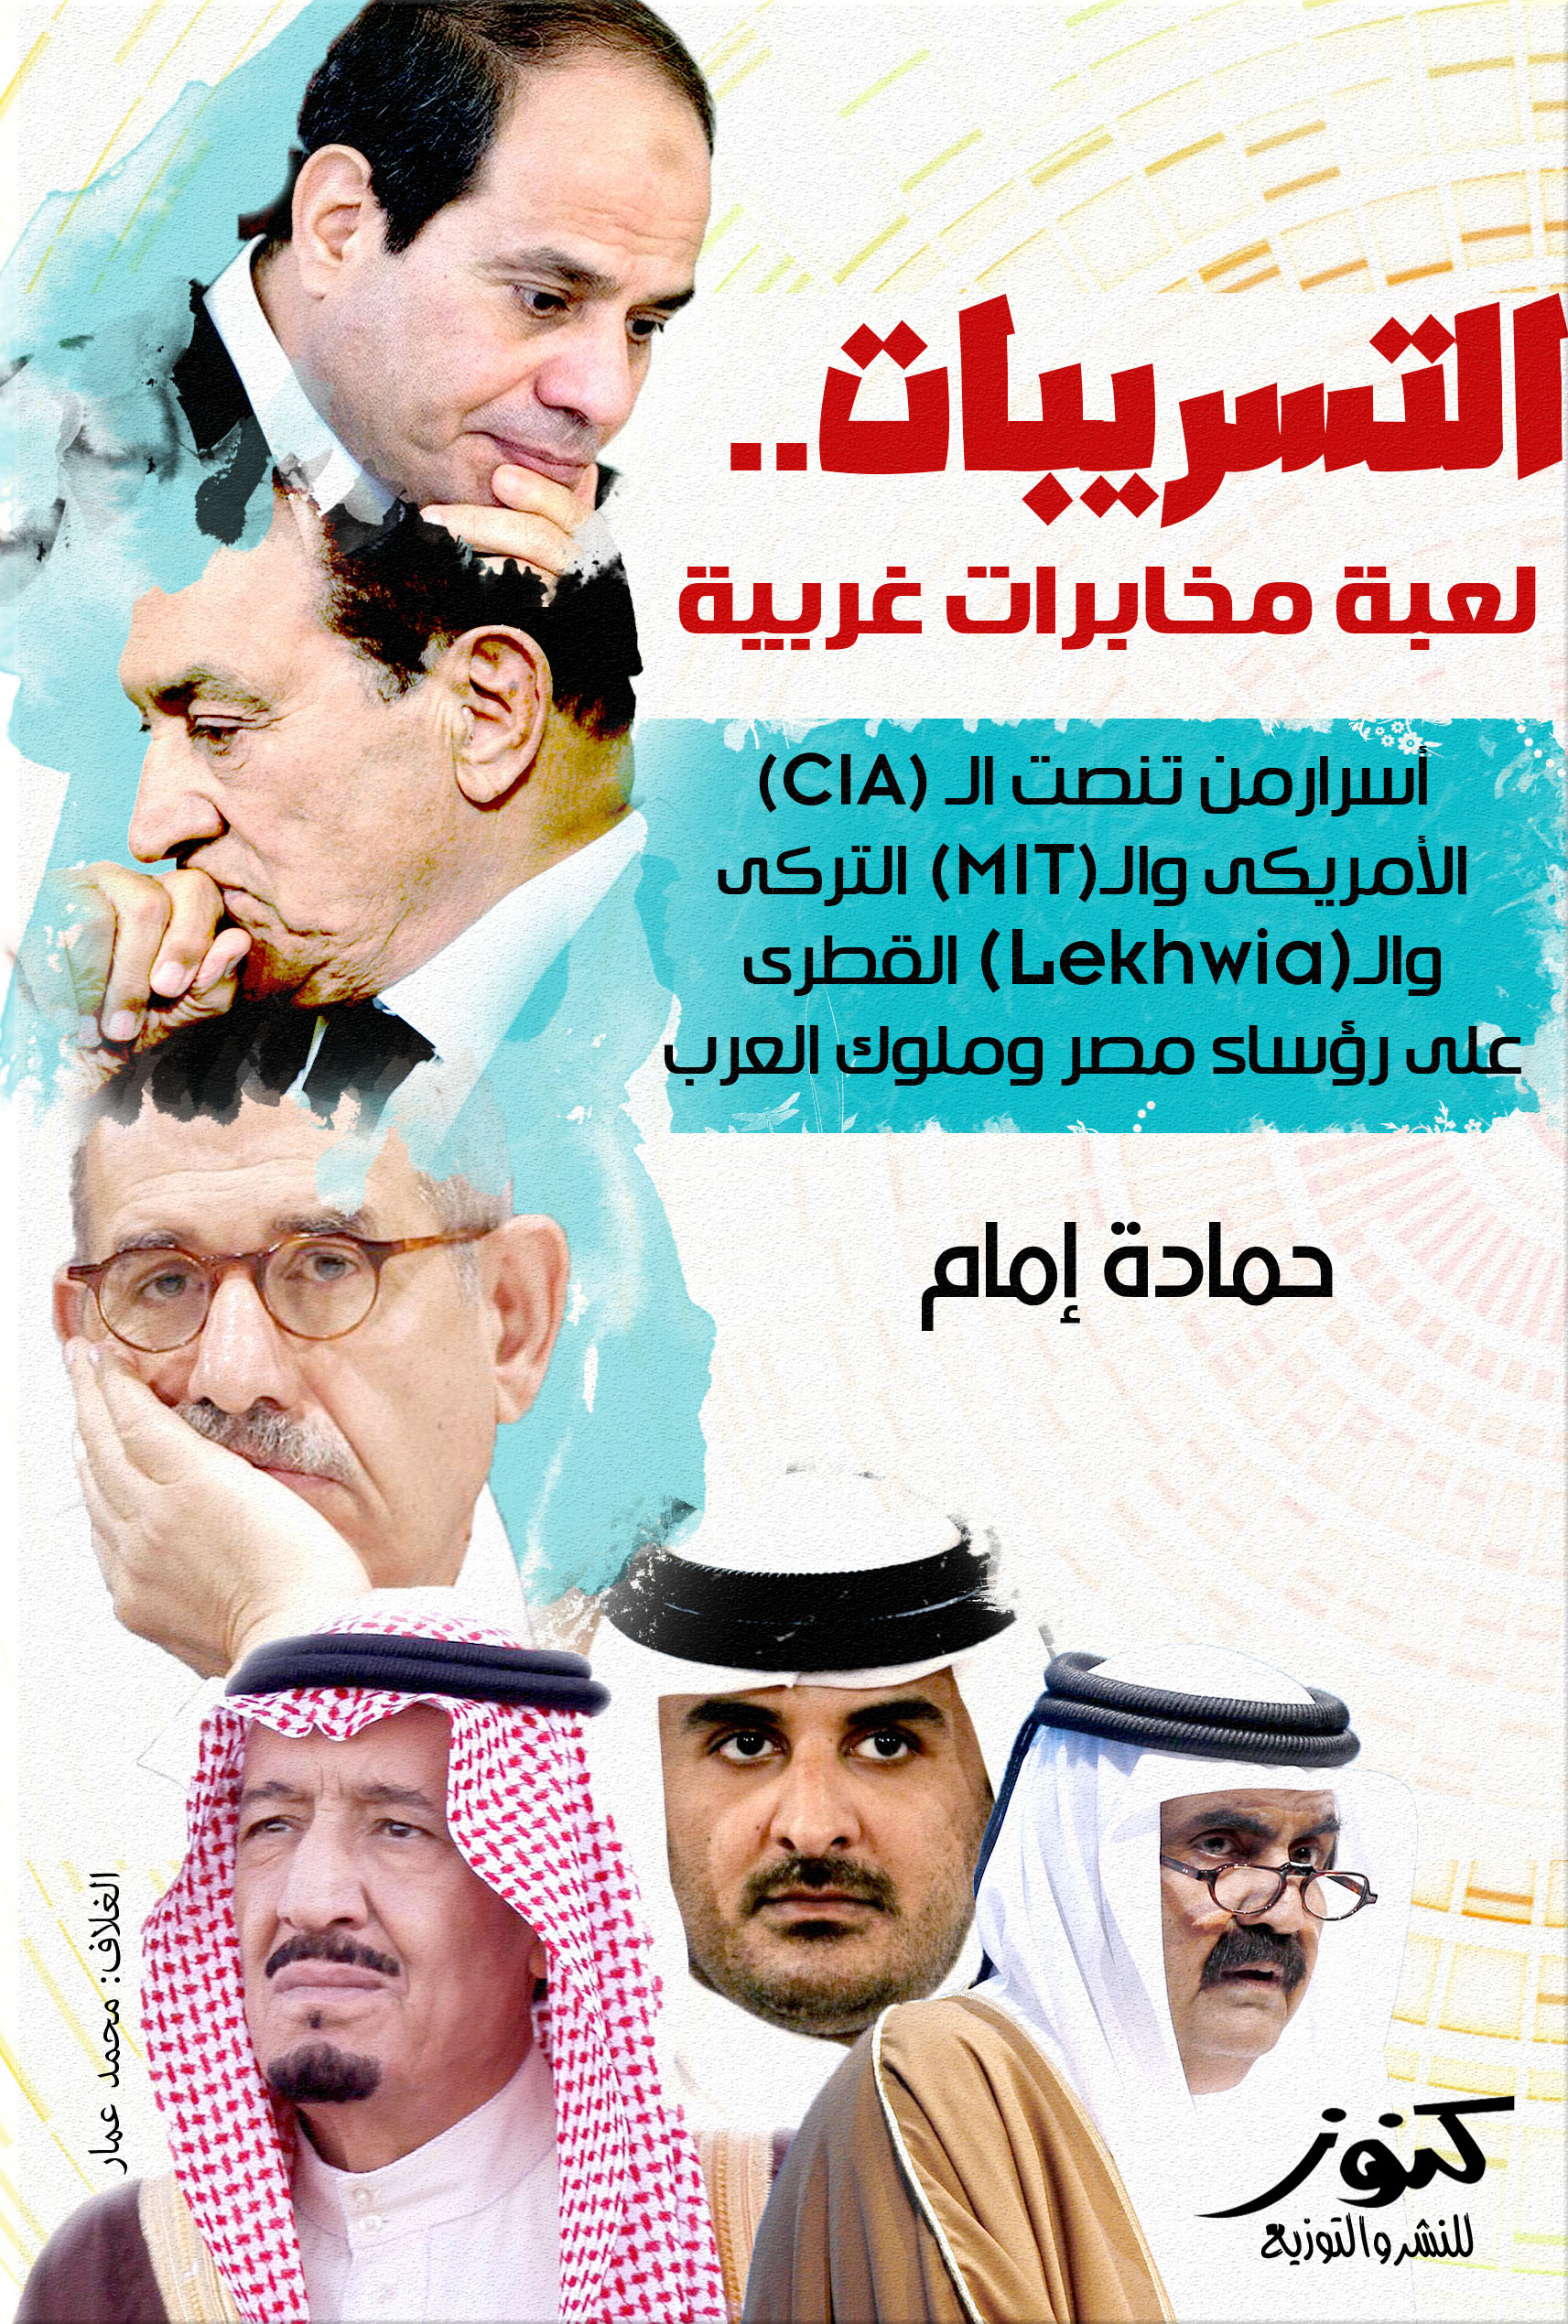 التسريبات - لعبة مخابرات غربية " أسرار من تنصت ال (CIA) الأمريكي وال (MIT) التركي وال (Lekhwia) القطري على رؤساء مصر وملوك العرب "